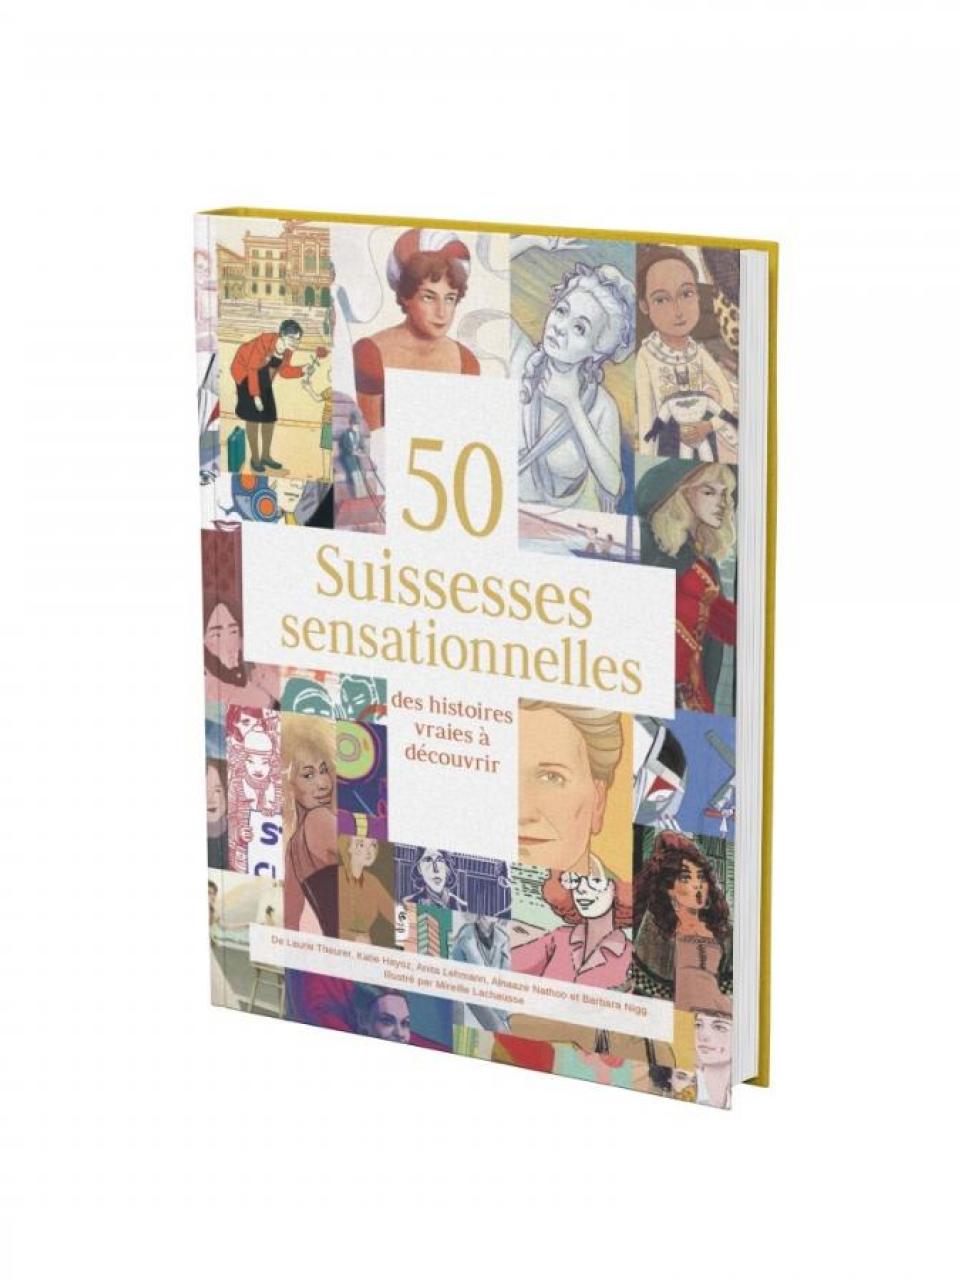 El libro: 50 mujeres suizas sensacionales